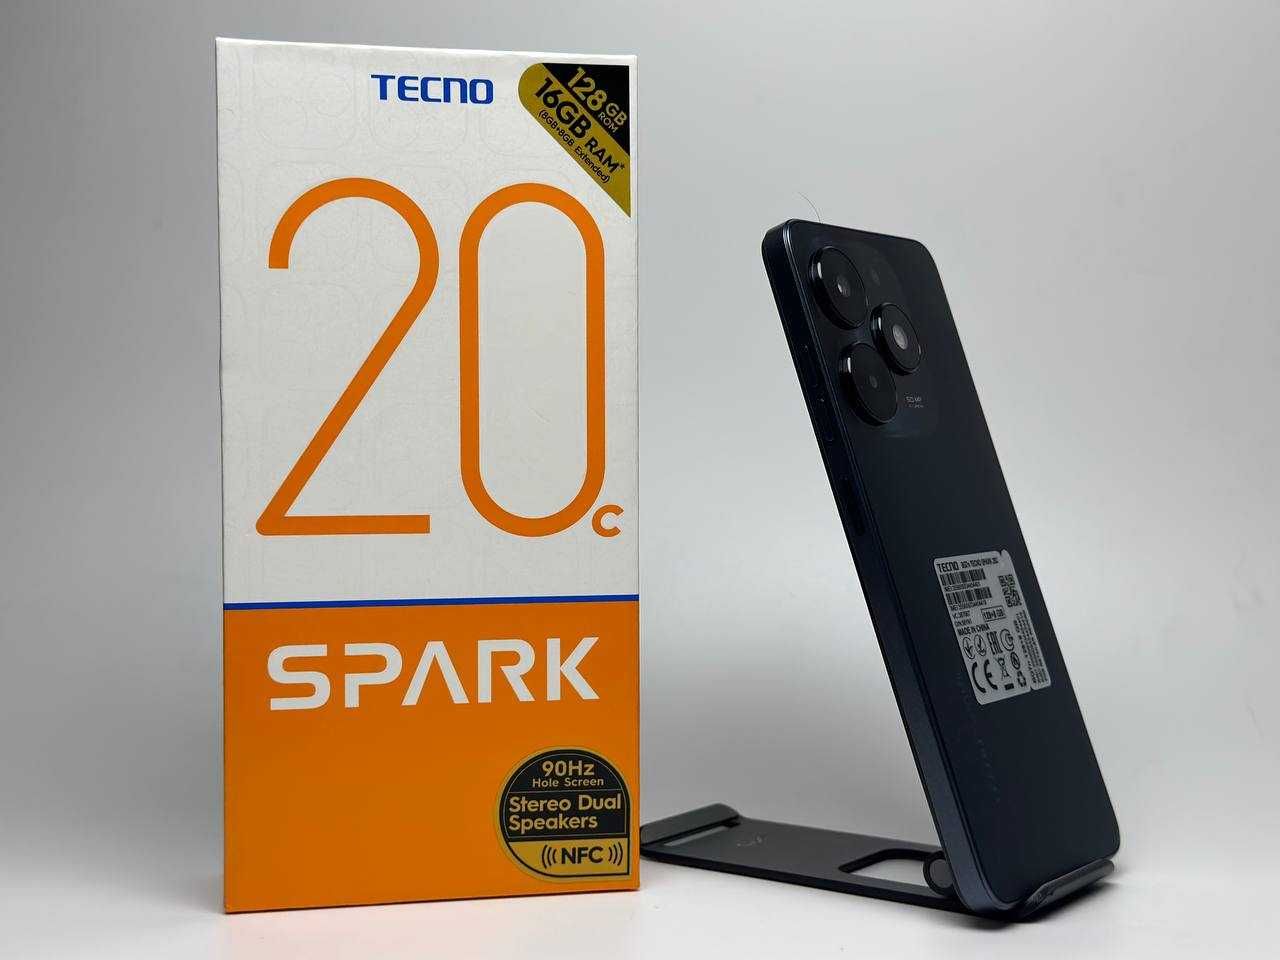 Мобільний телефон Tecno Spark 20C 8/128GB NFC Black Смартфон Купити